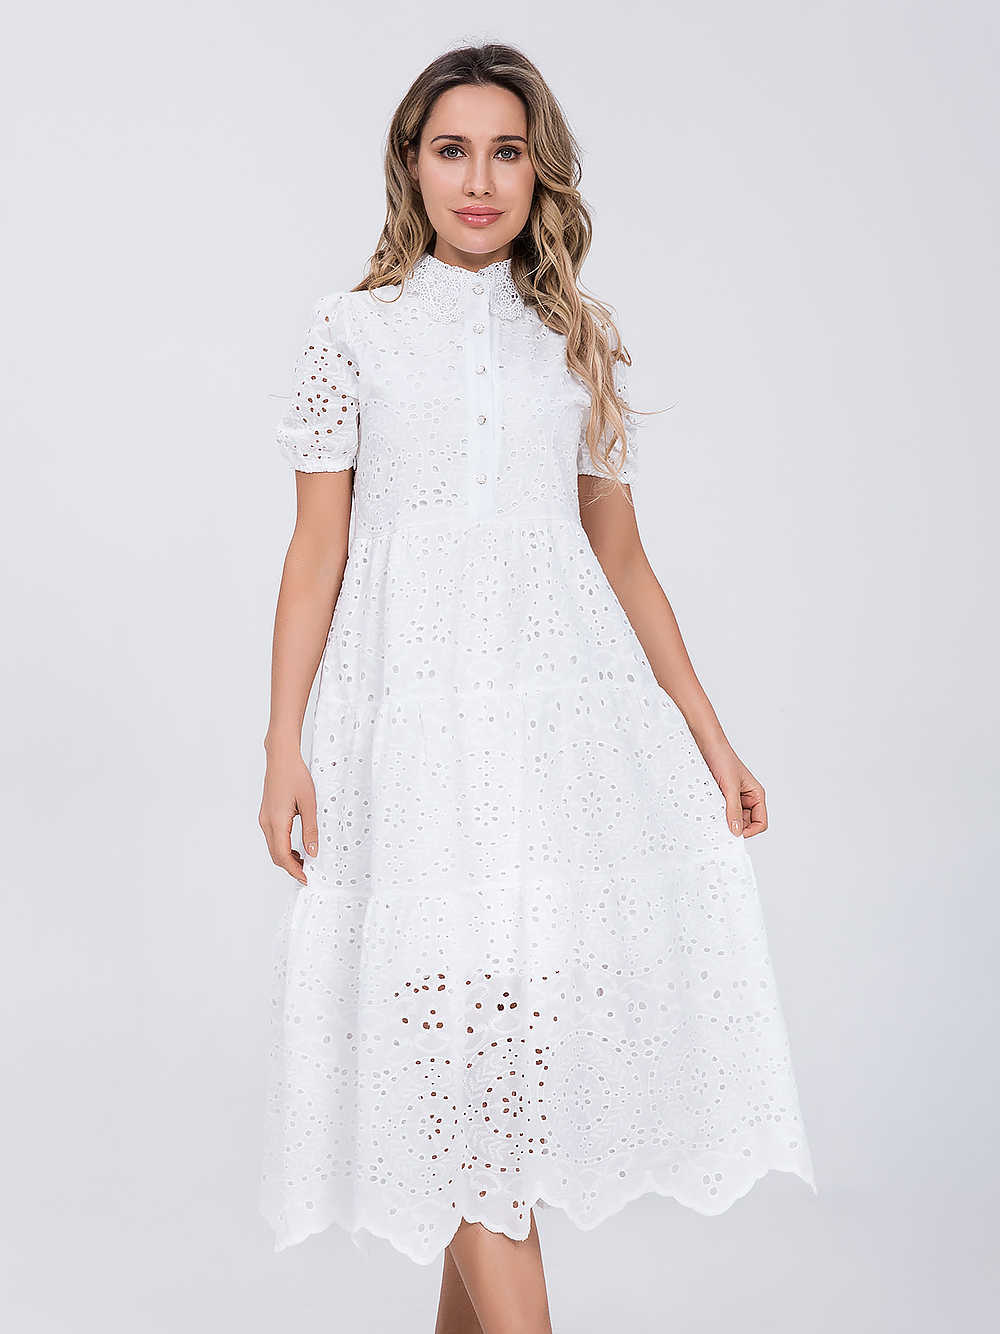 الفساتين غير الرسمية Marwin Cotton Hollow Out Summer White Dress Women Holiday Perppy عالي الخصر عالي الخصر مكدسة الفساتين المصغرة A-Line Frills Vestido W0315